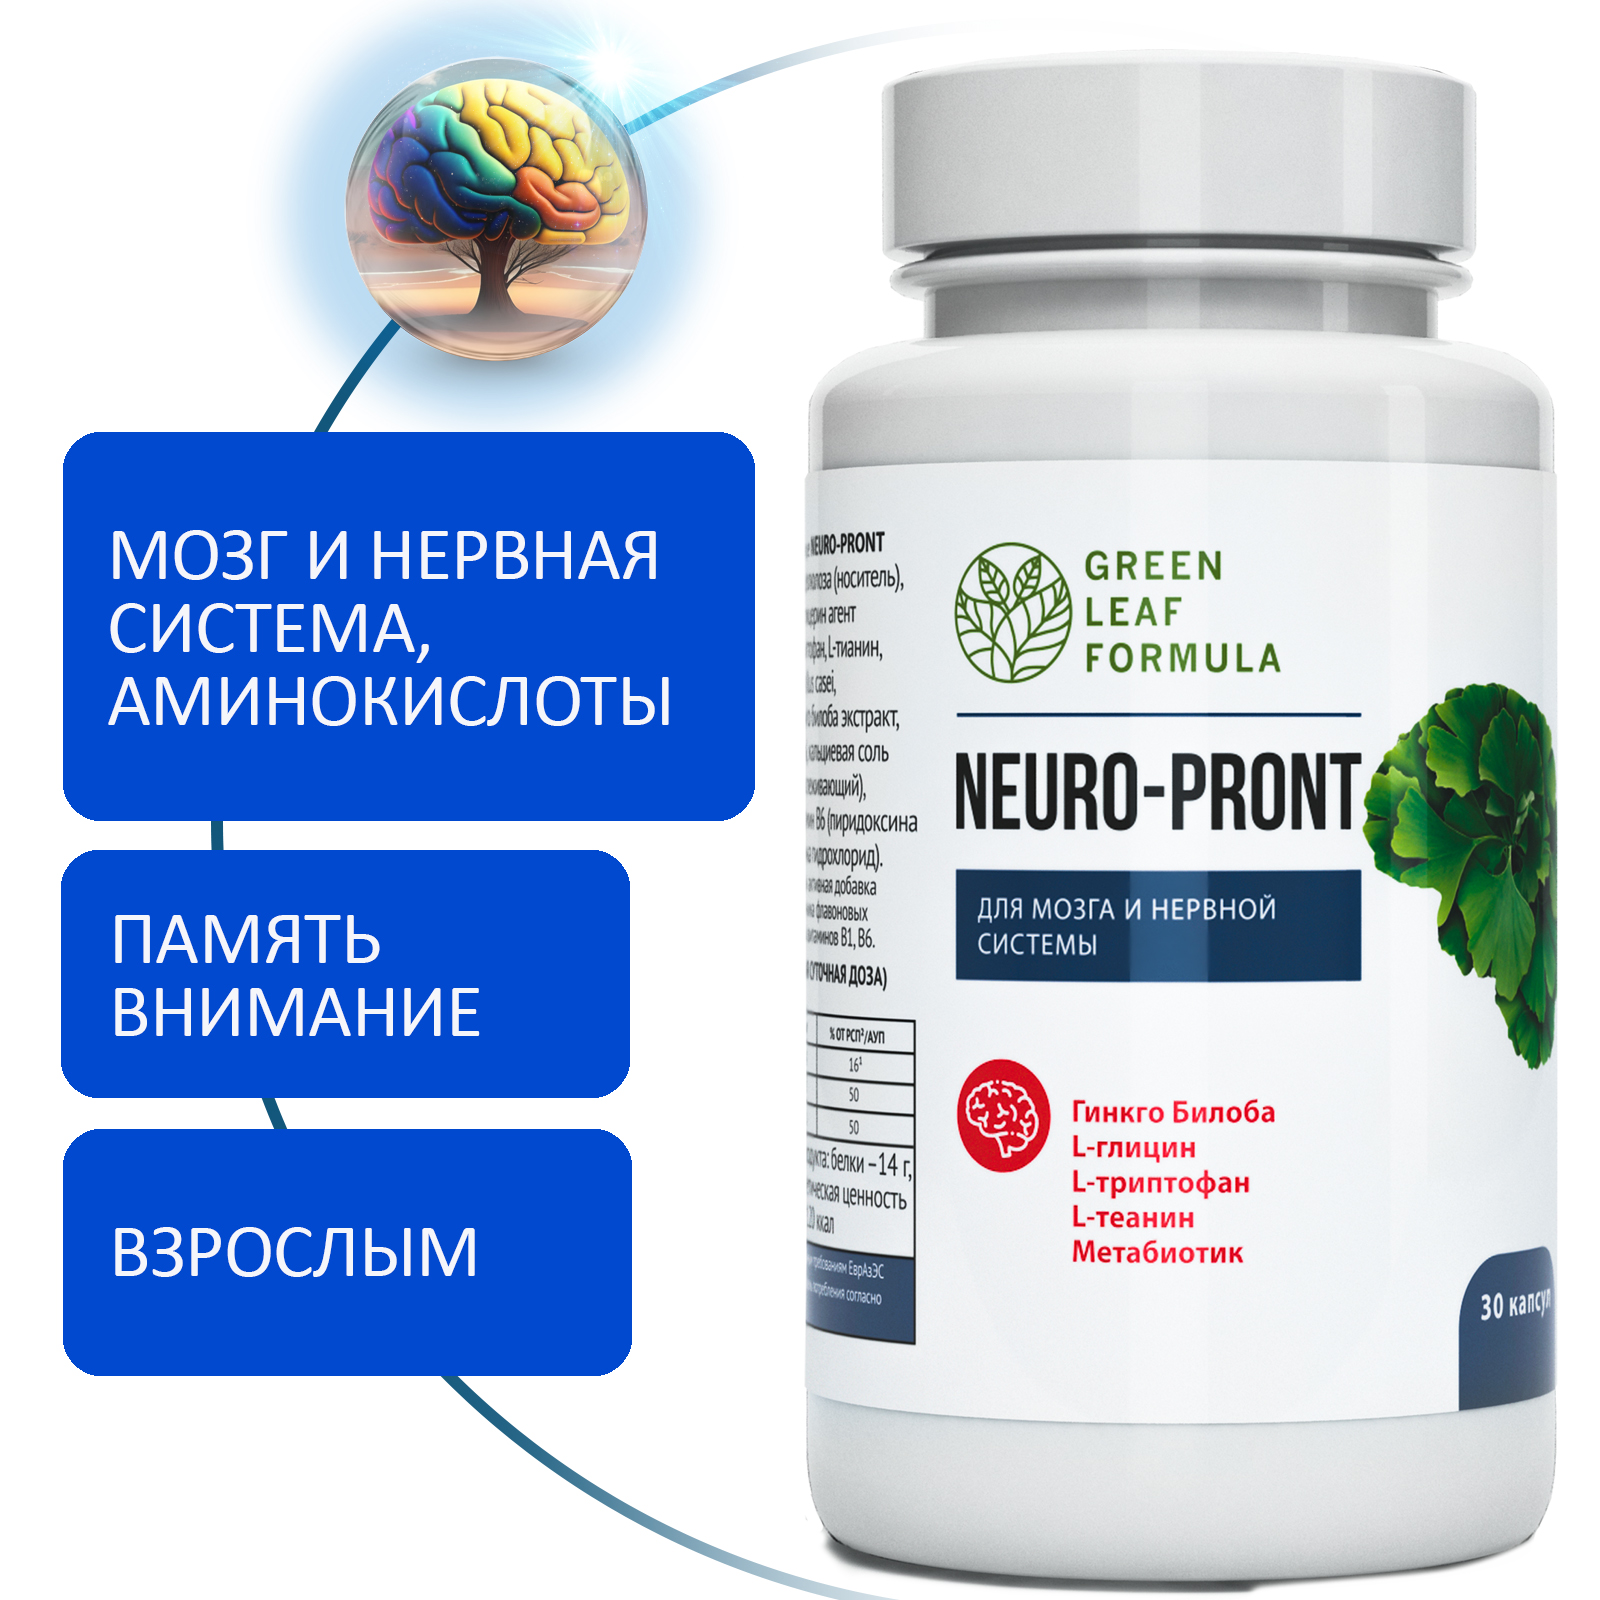 Таблетки от стресса депрессии Green Leaf Formula витамины для мозга нервной системы для памяти и настроения триптофан и 5 НТР 2 банки - фото 2